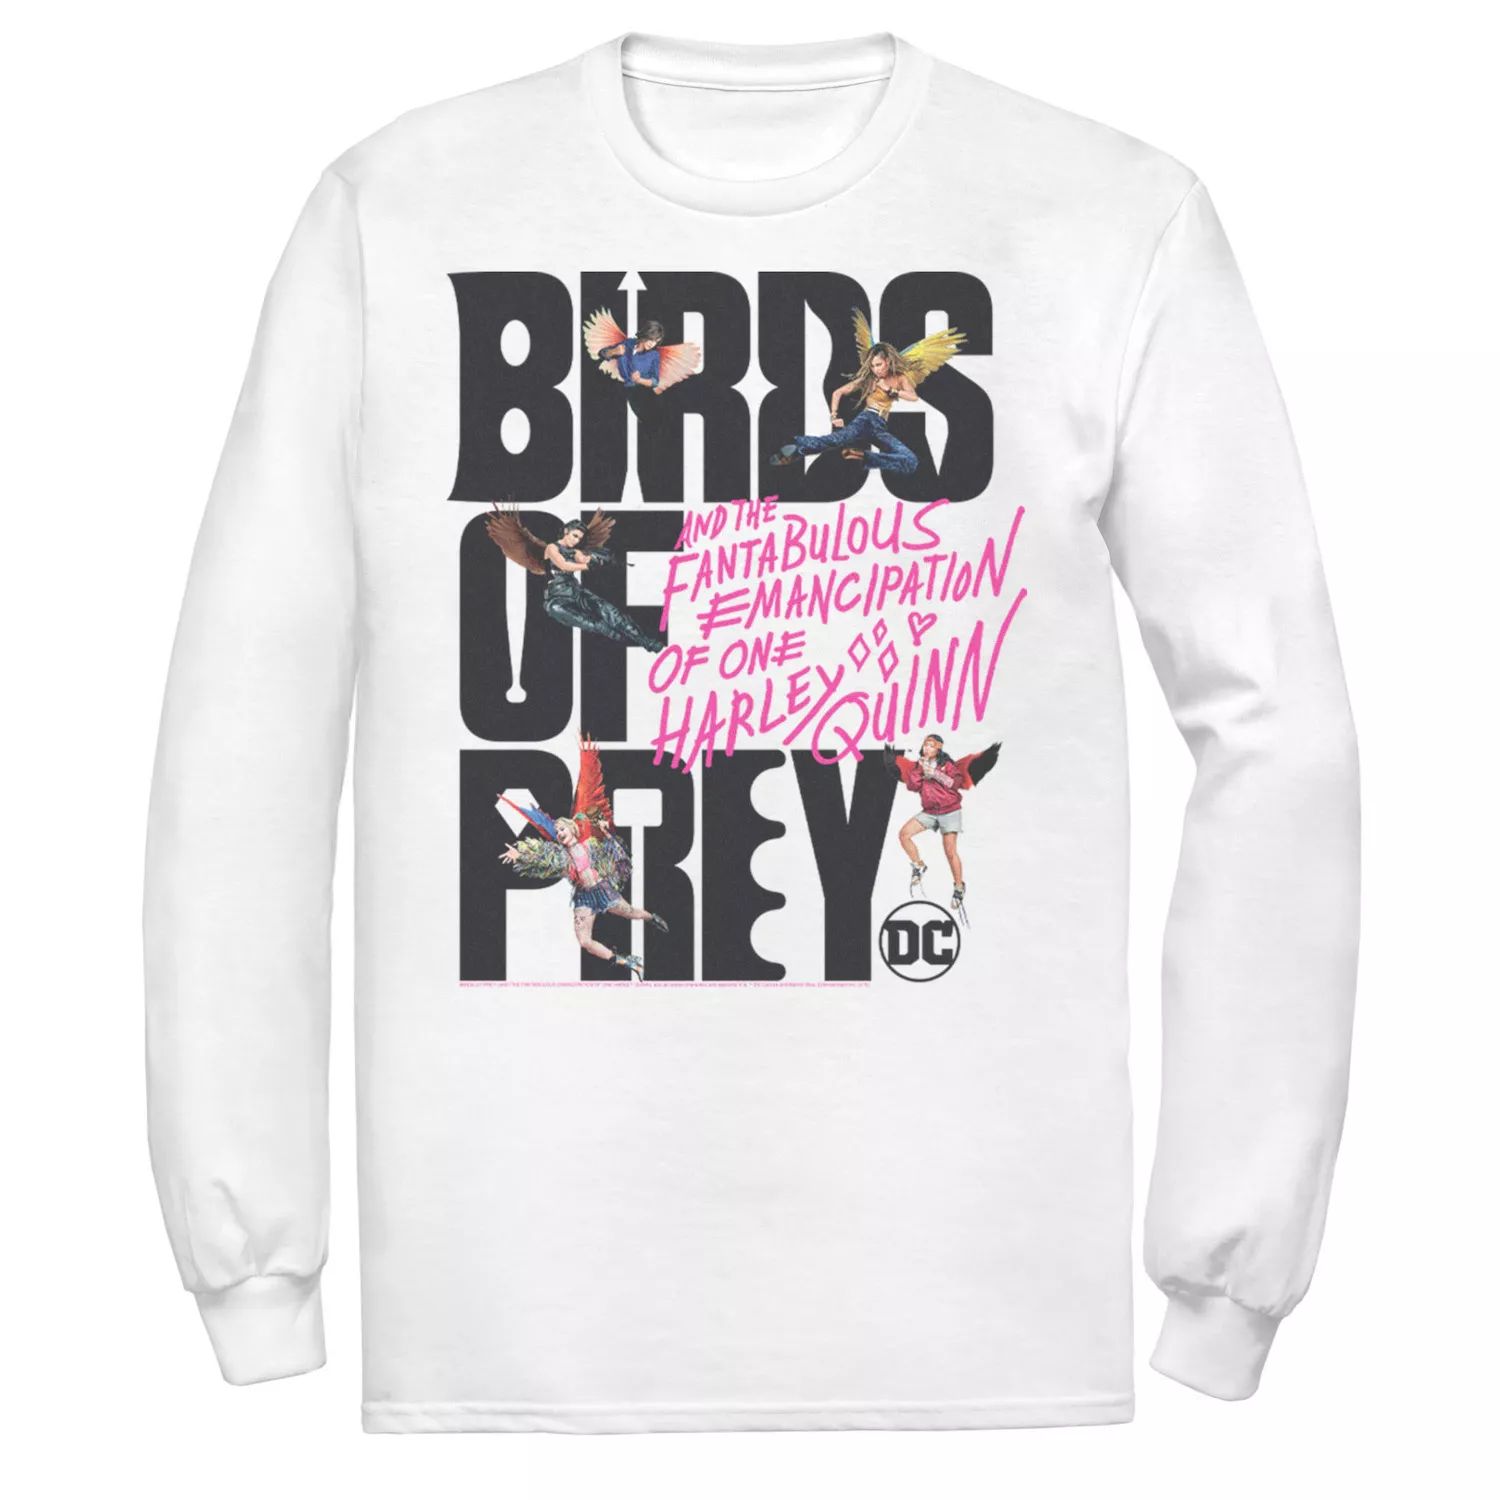 Мужская футболка с надписью «Хищные птицы» и коллажем DC Comics приор групп наклейка патч для одежды dc хищные птицы – 2